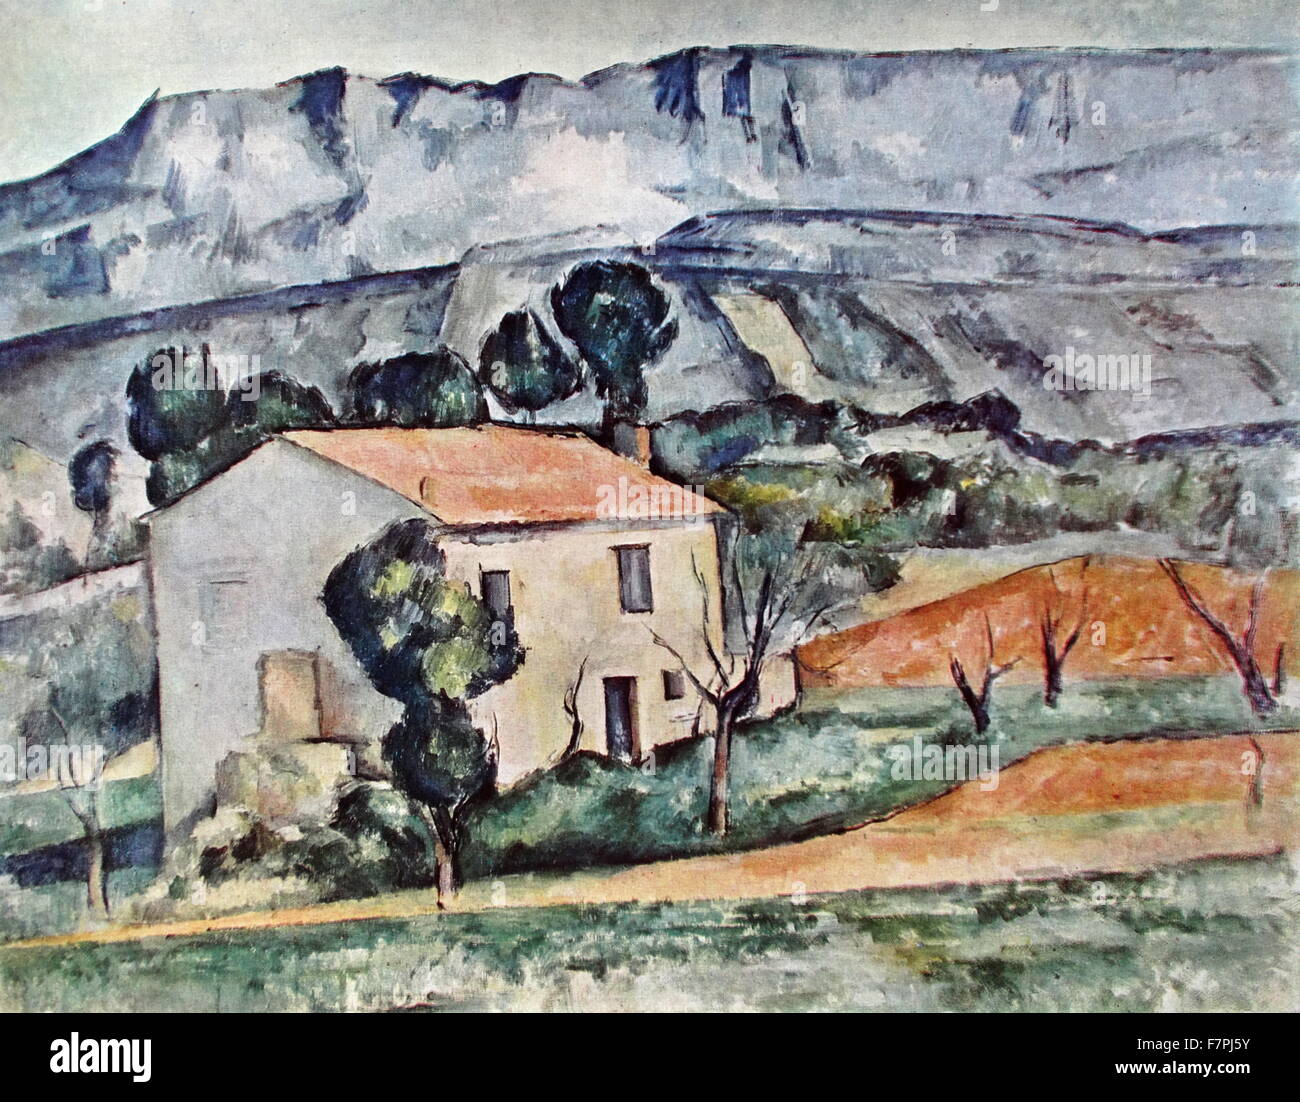 Gemälde mit dem Titel "Haus in der Provence" von Paul Cézanne, französischer Künstler (1839-1906) und Post-Impressionisten Maler. Vom 19. Jahrhundert Stockfoto